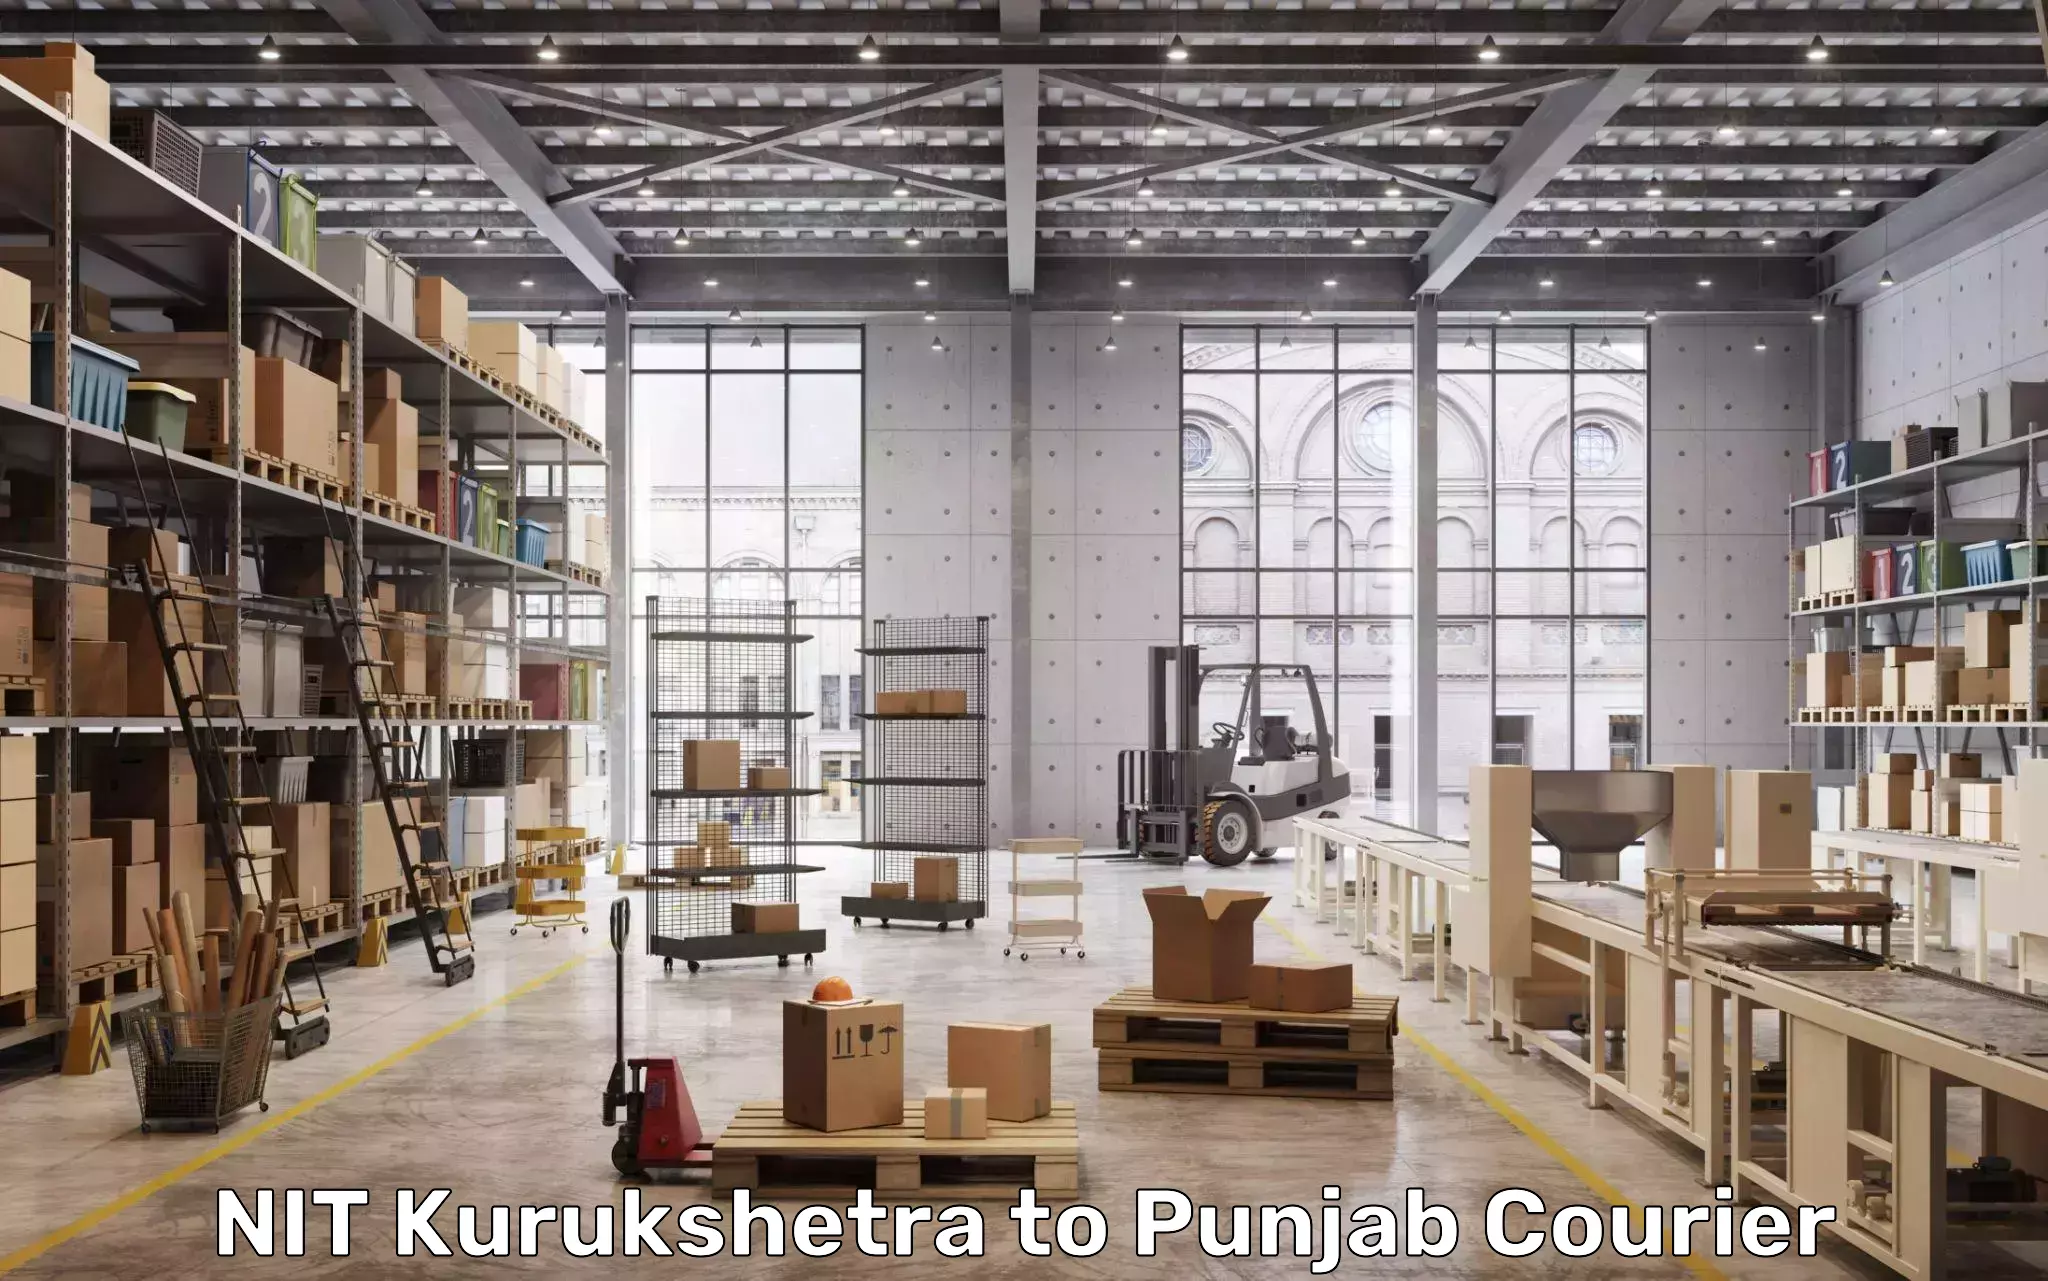 Luggage shipment processing in NIT Kurukshetra to Punjab